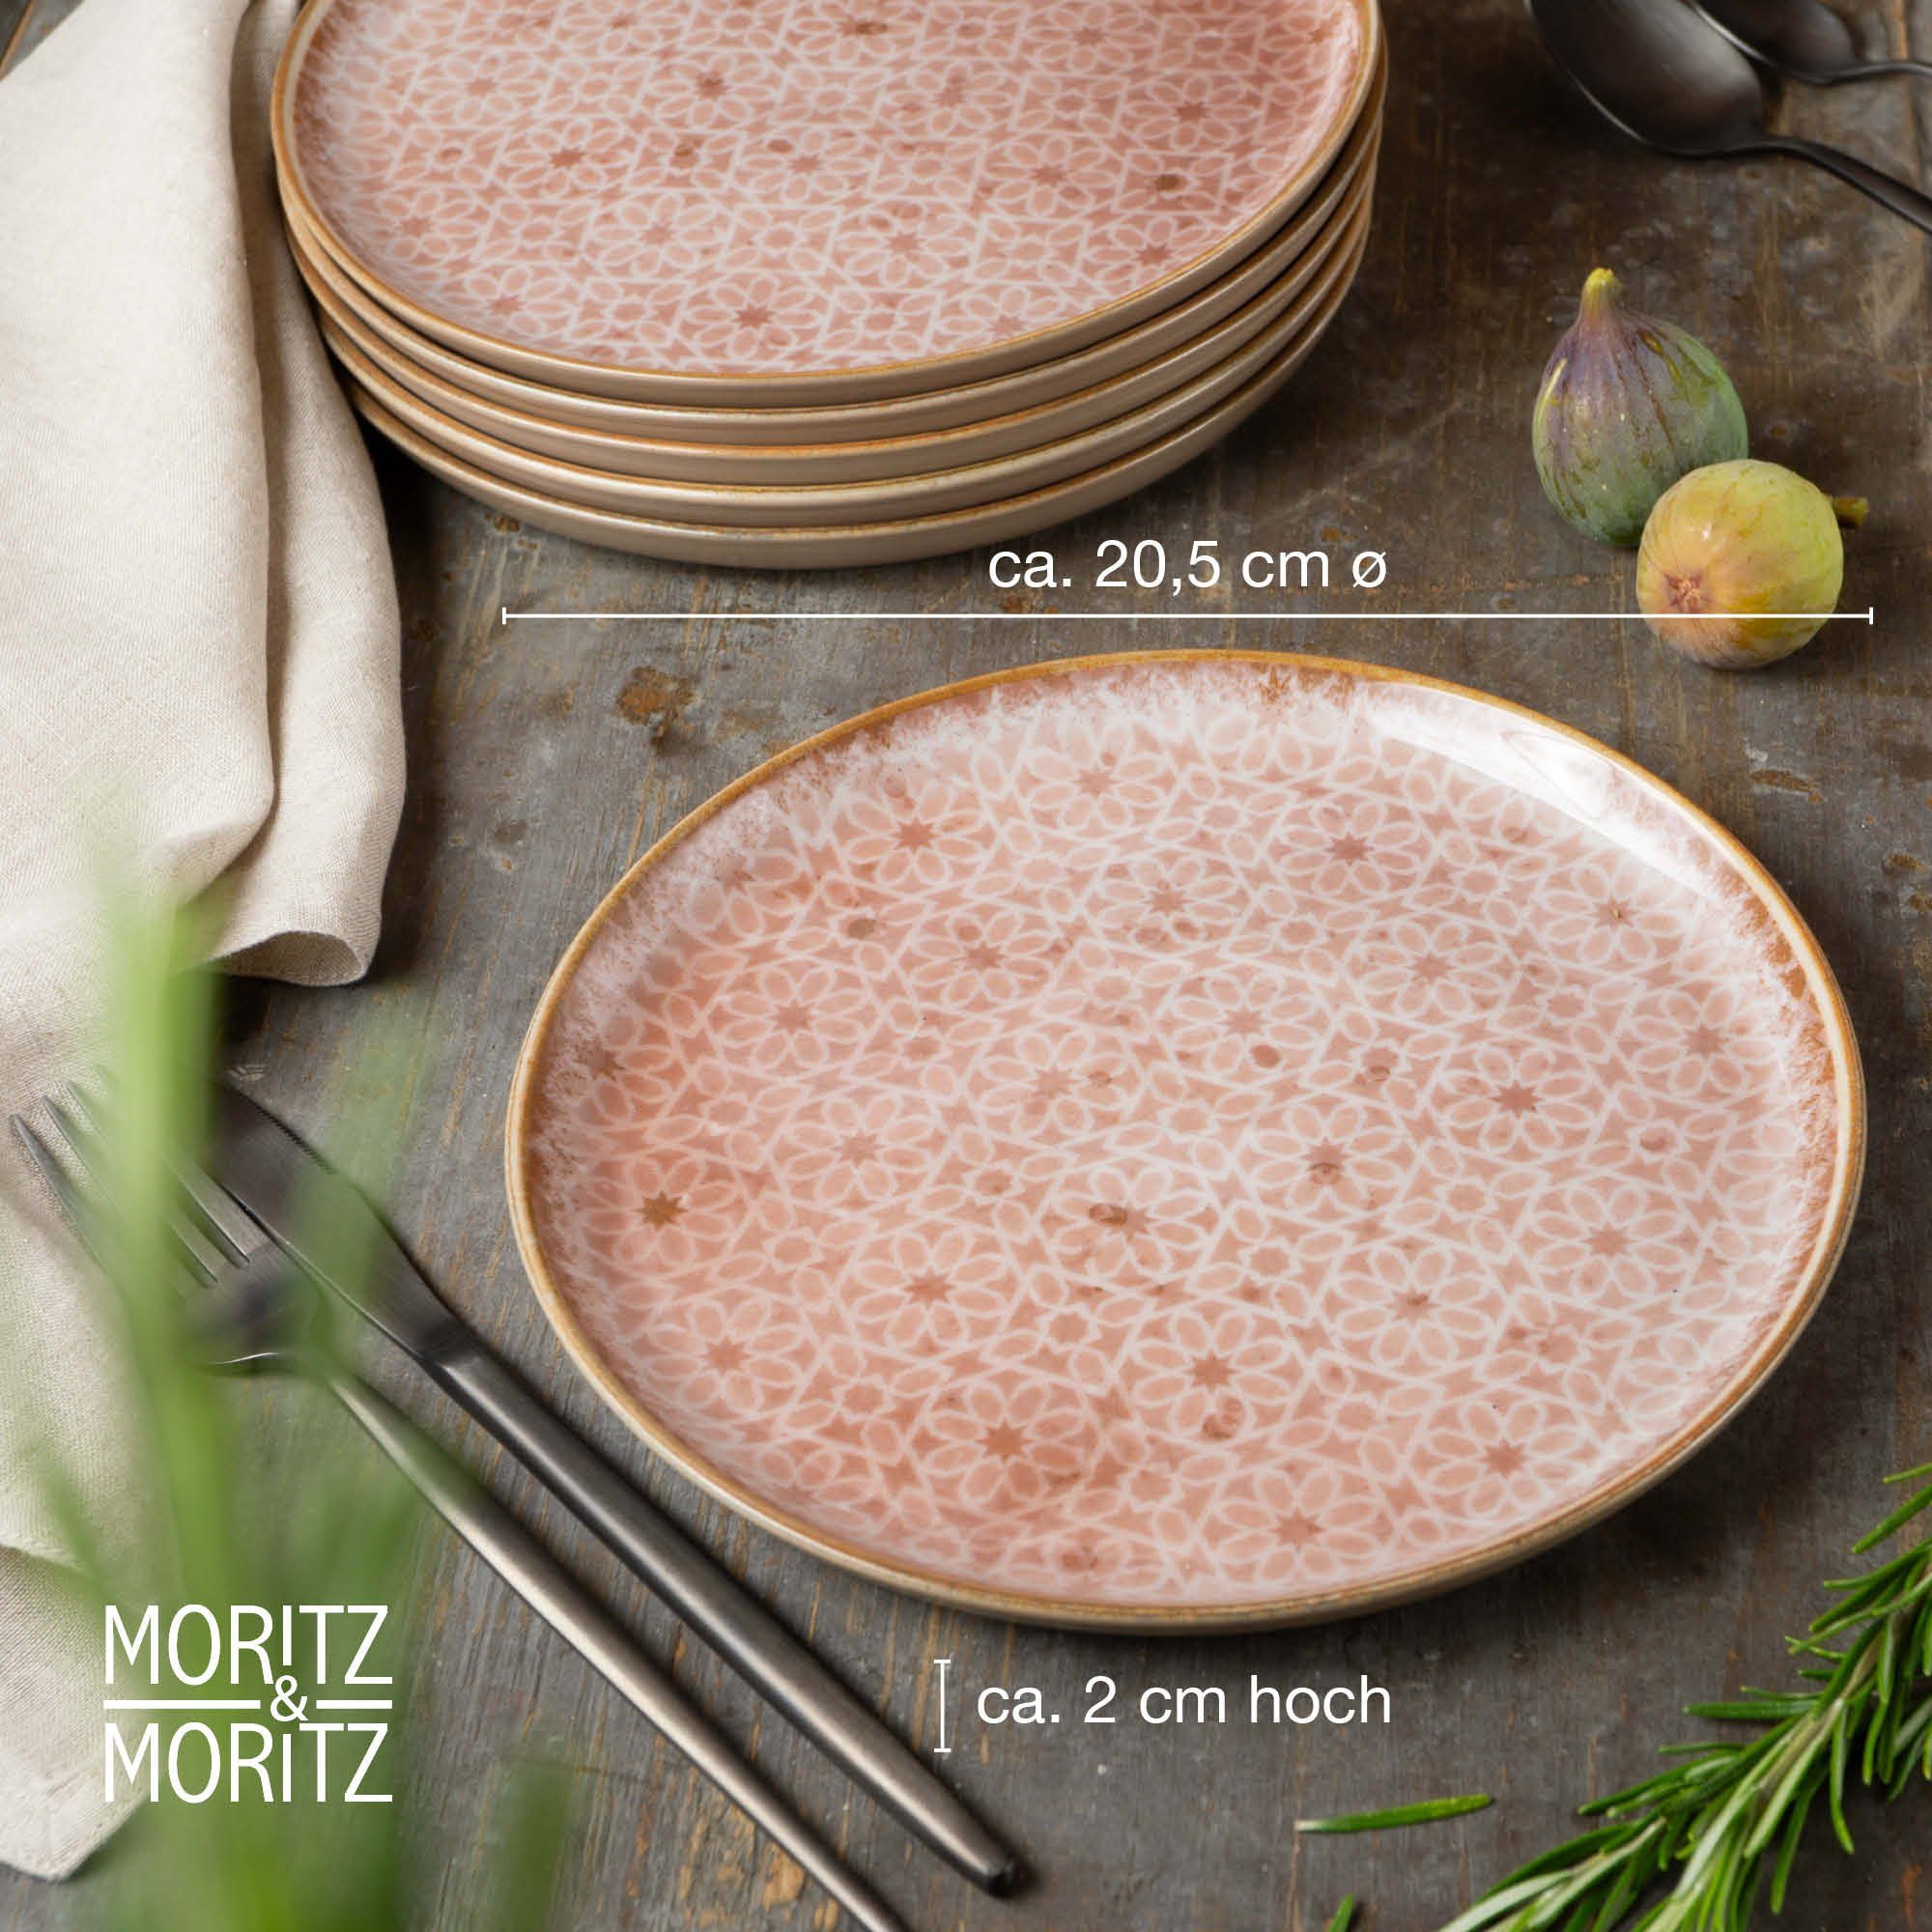 Dessertteller 6 Moritz mikrowellengeeignet 6 spülmaschinen- & Rosa und (6-tlg), Moritz Tafelservice Personen, Personen TERRA für -